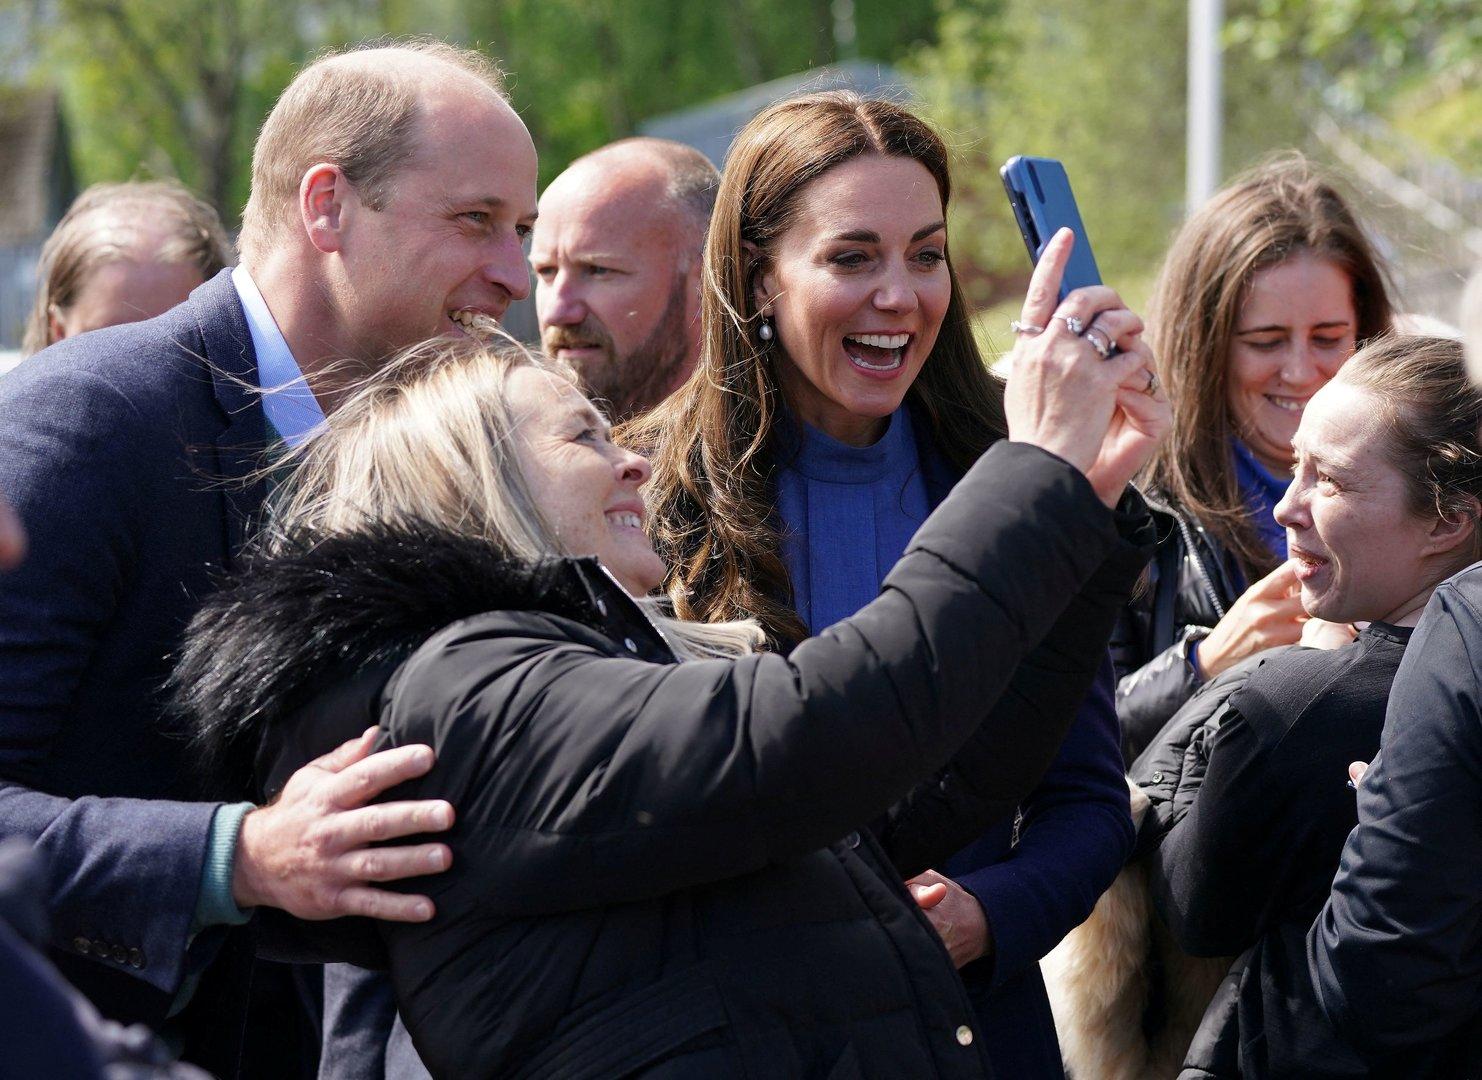 Muten sich Prinz William und Prinzessin Kate zu viel zu?